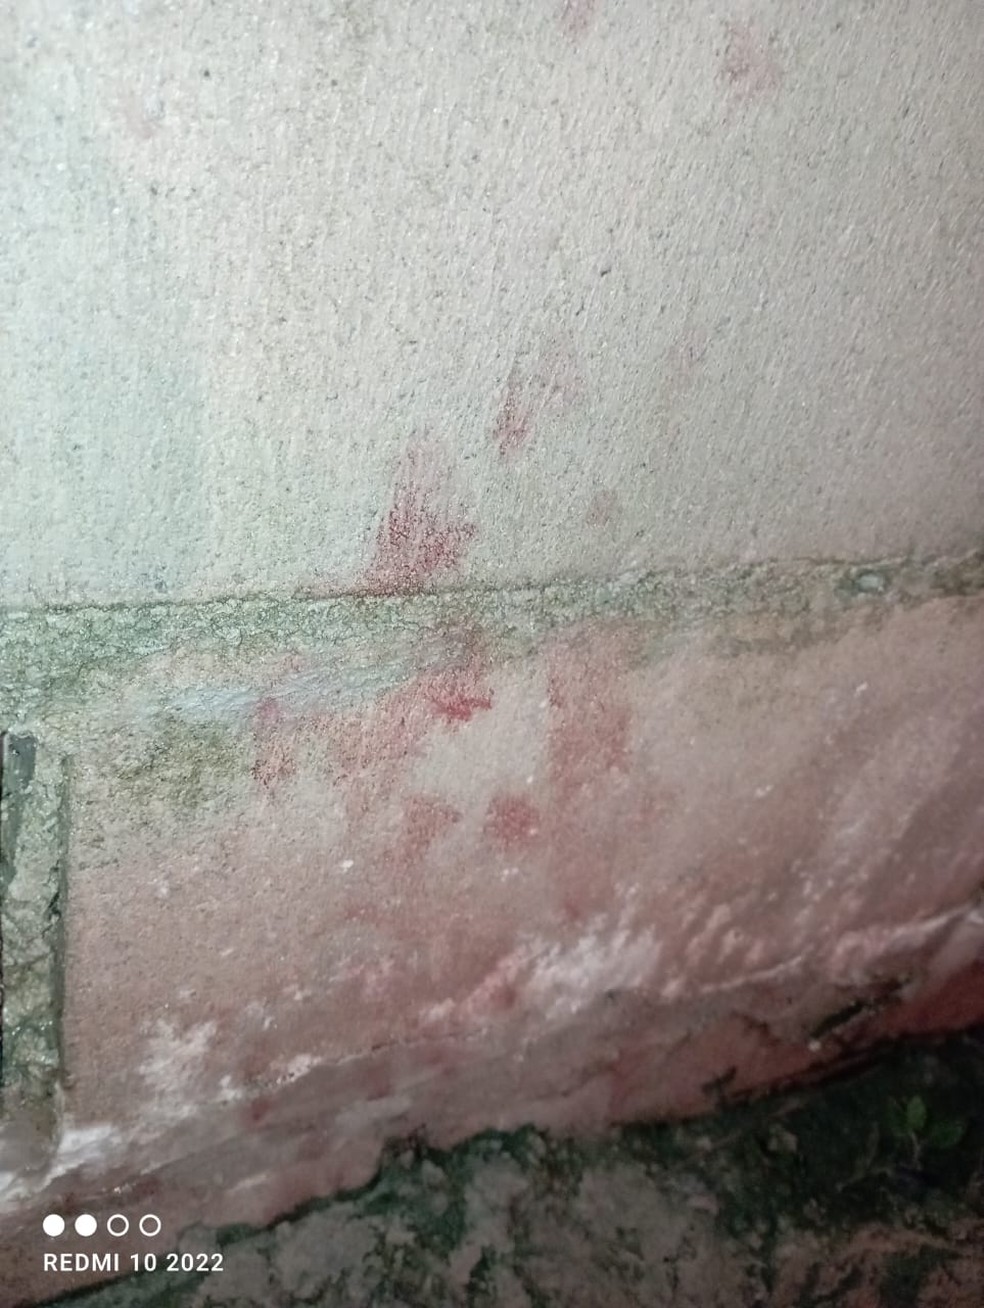 Vestígios de sangue foram encontrados durante buscas de familiares, em Barcarena — Foto: Arquivo Pessoal